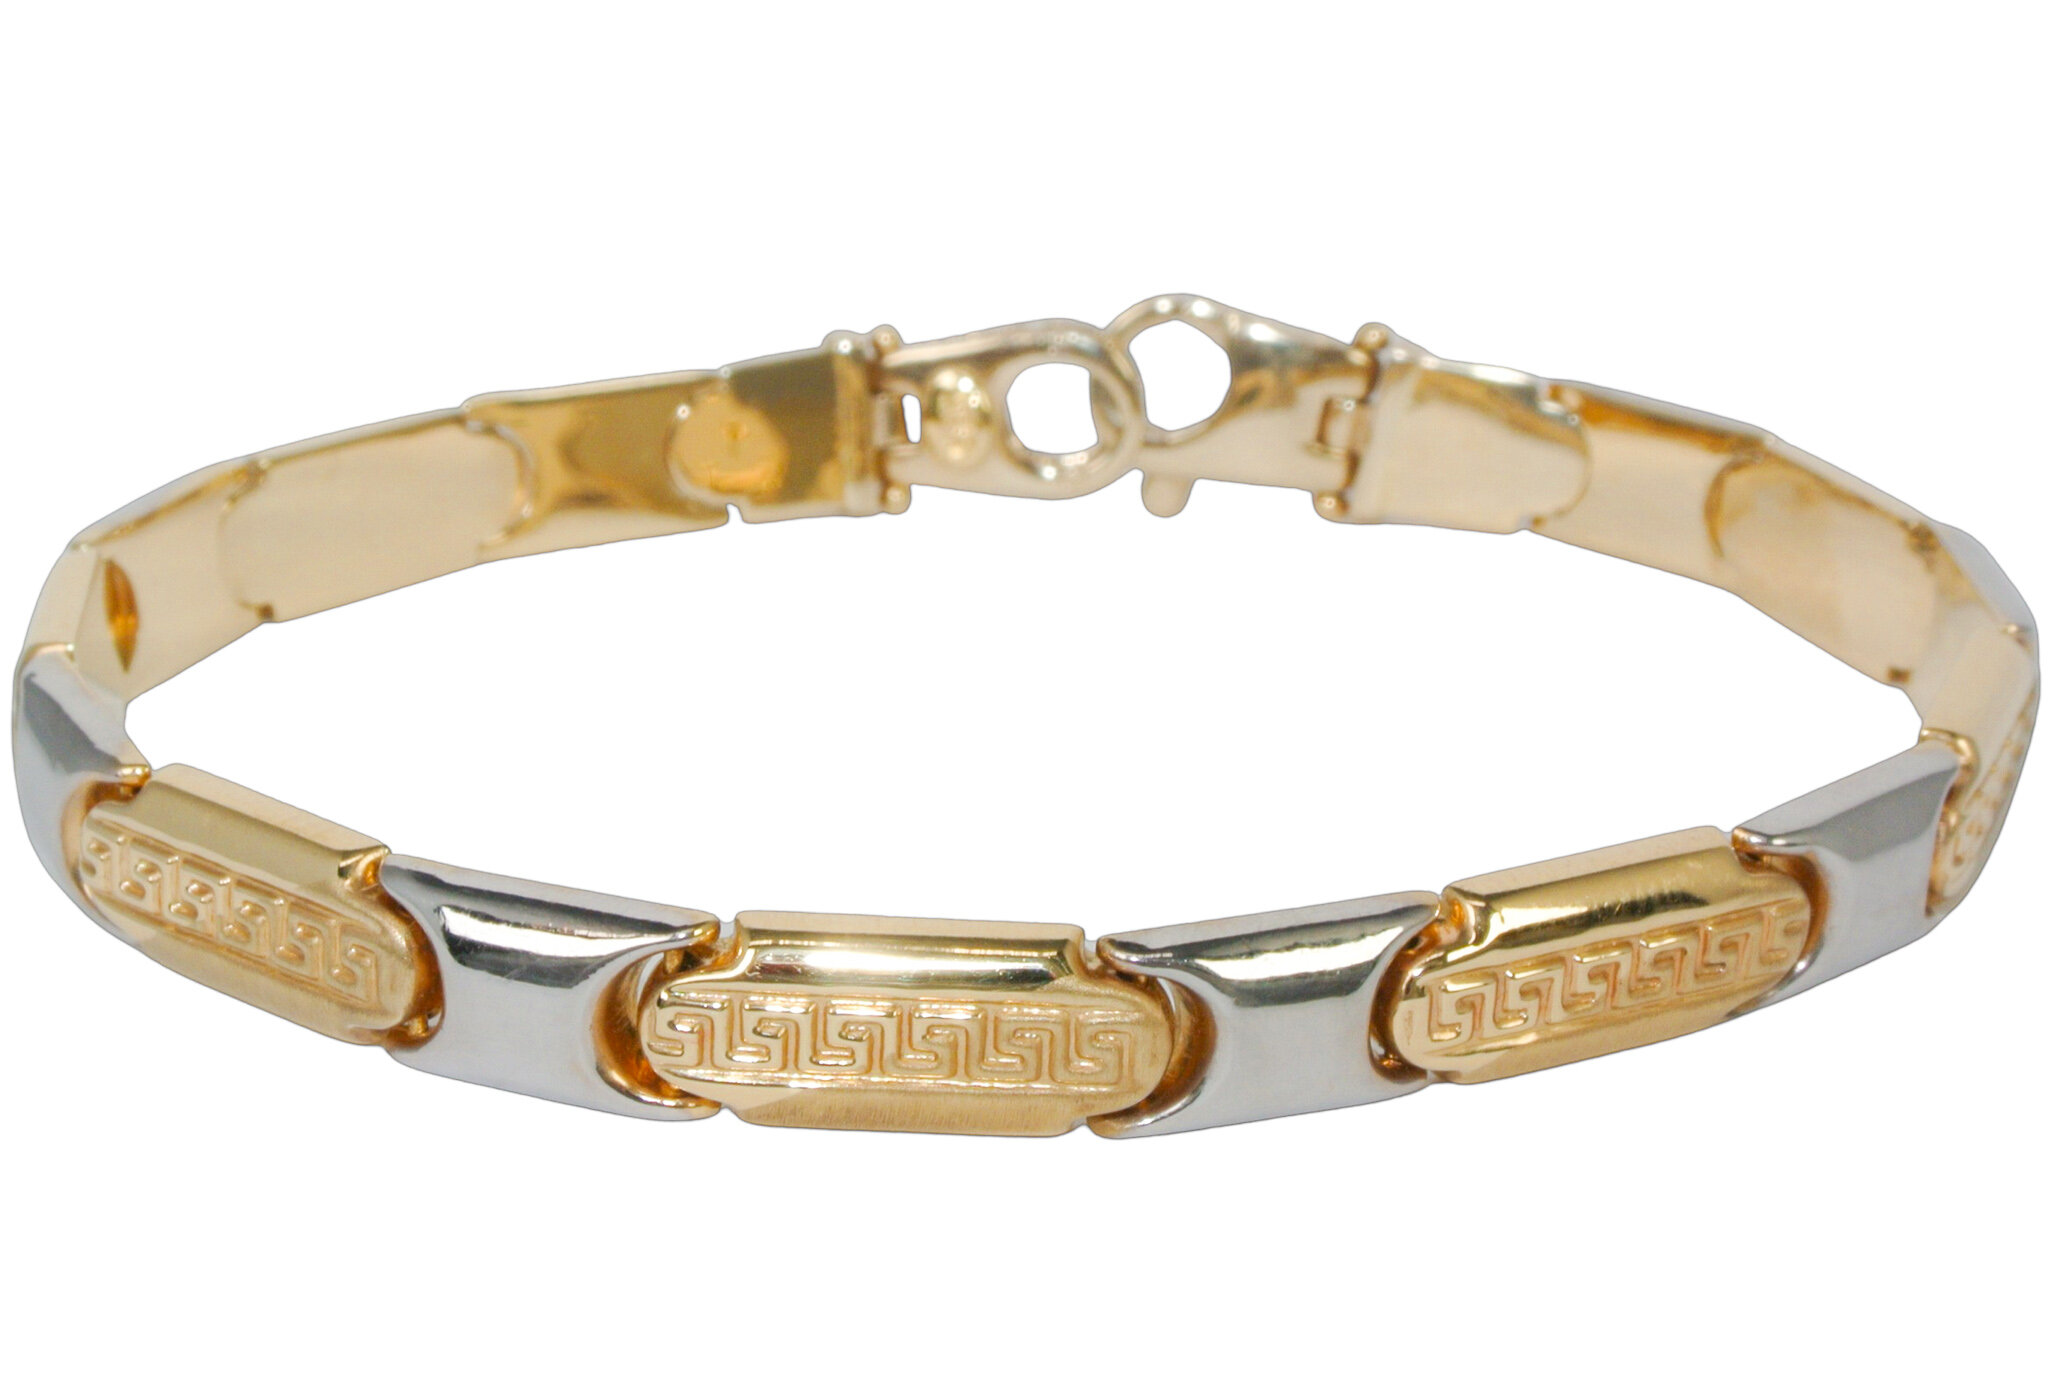 Massief tweekleurige gouden armband met antiek patroon